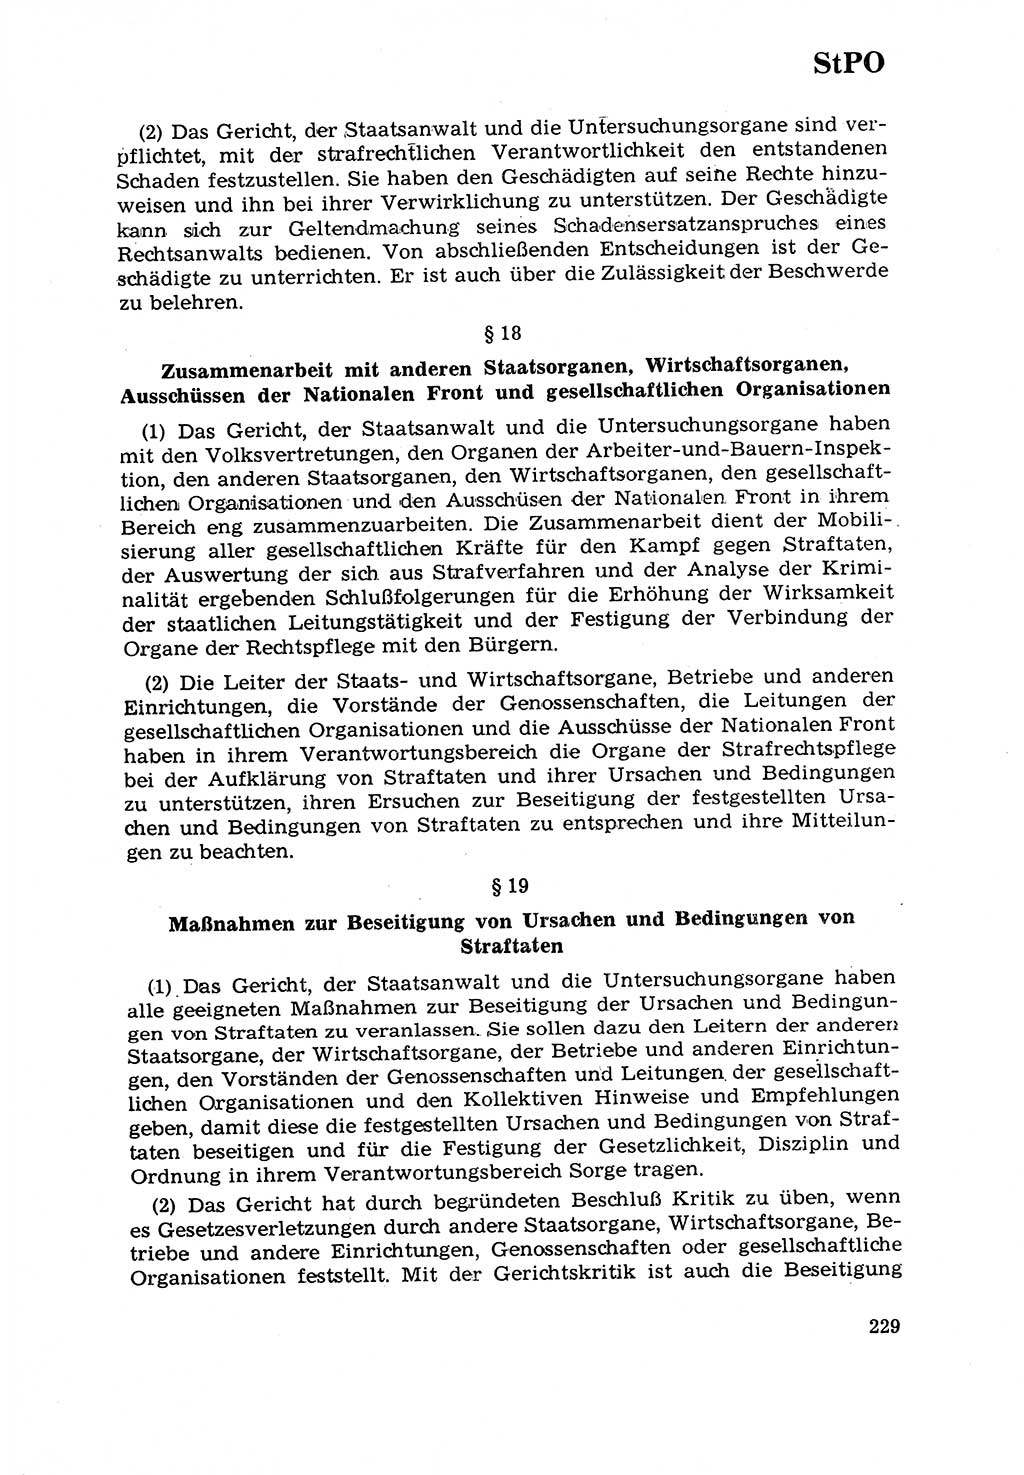 Strafrecht [Deutsche Demokratische Republik (DDR)] 1968, Seite 229 (Strafr. DDR 1968, S. 229)